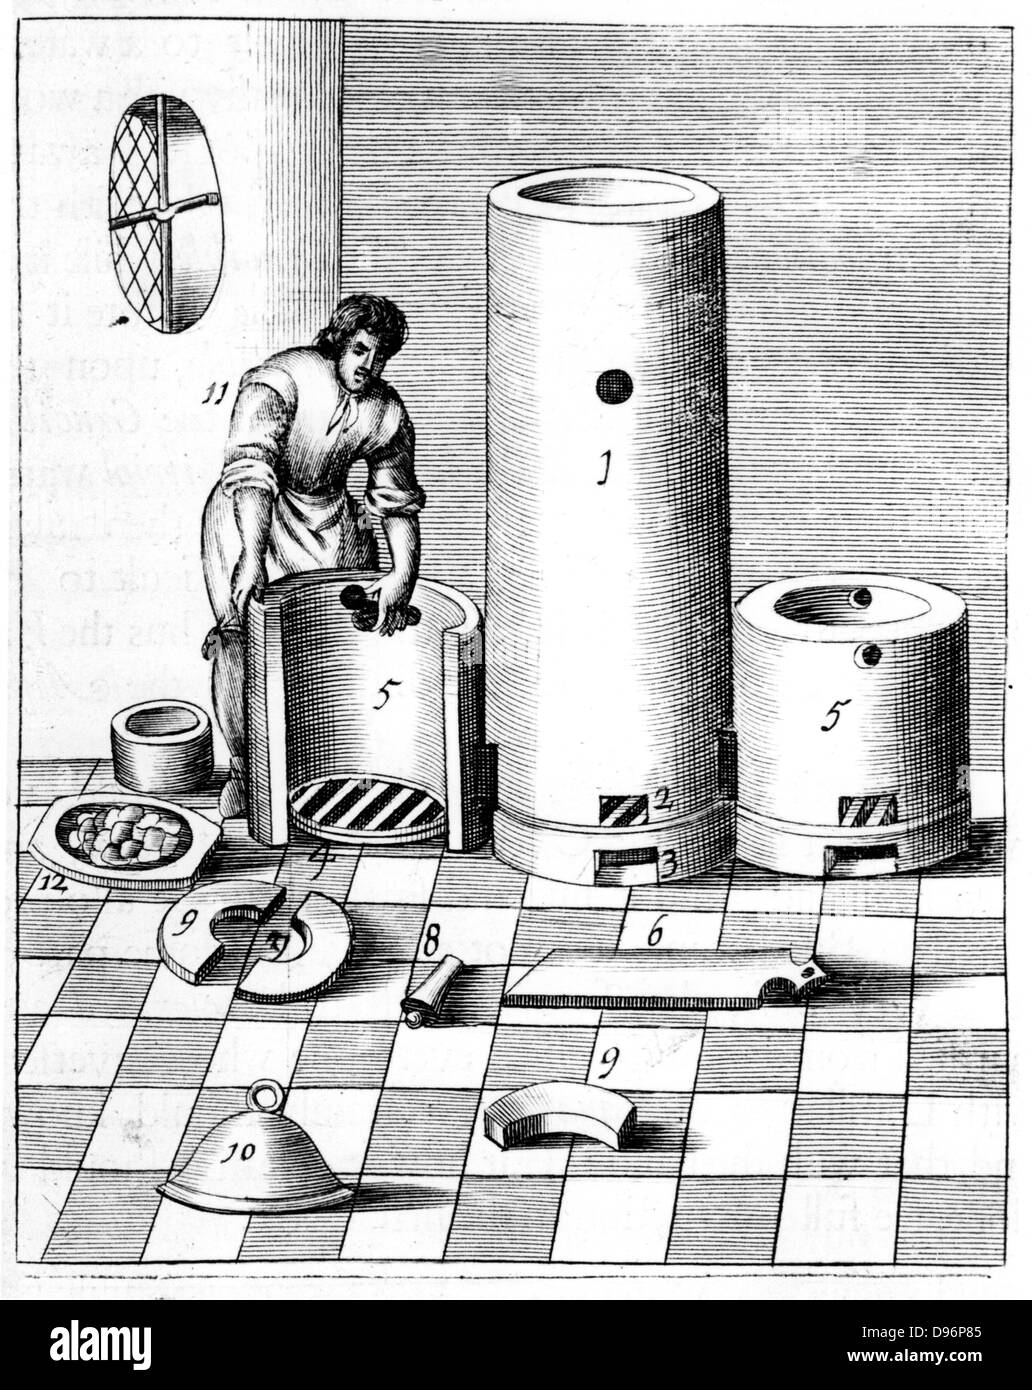 Athanor o 'Slow Harry', un auto-forno di alimentazione mantenendo costante la temperatura. Questa piastra visualizza l'Athanor e camere laterali (5,5) per i reagenti in parti separate. Uno degli impieghi del forno era la produzione di acido nitrico (noto anche come Aqua Fortis o separazione di acido) che è stato usato per la raffinazione e il saggio dei metalli. Dal 1683 edizione in lingua inglese di "Beschreibung allerfurnemisten mineralischen Ertzt', Lazarus Ercker, (Praga, 1574). Incisione su rame. Foto Stock